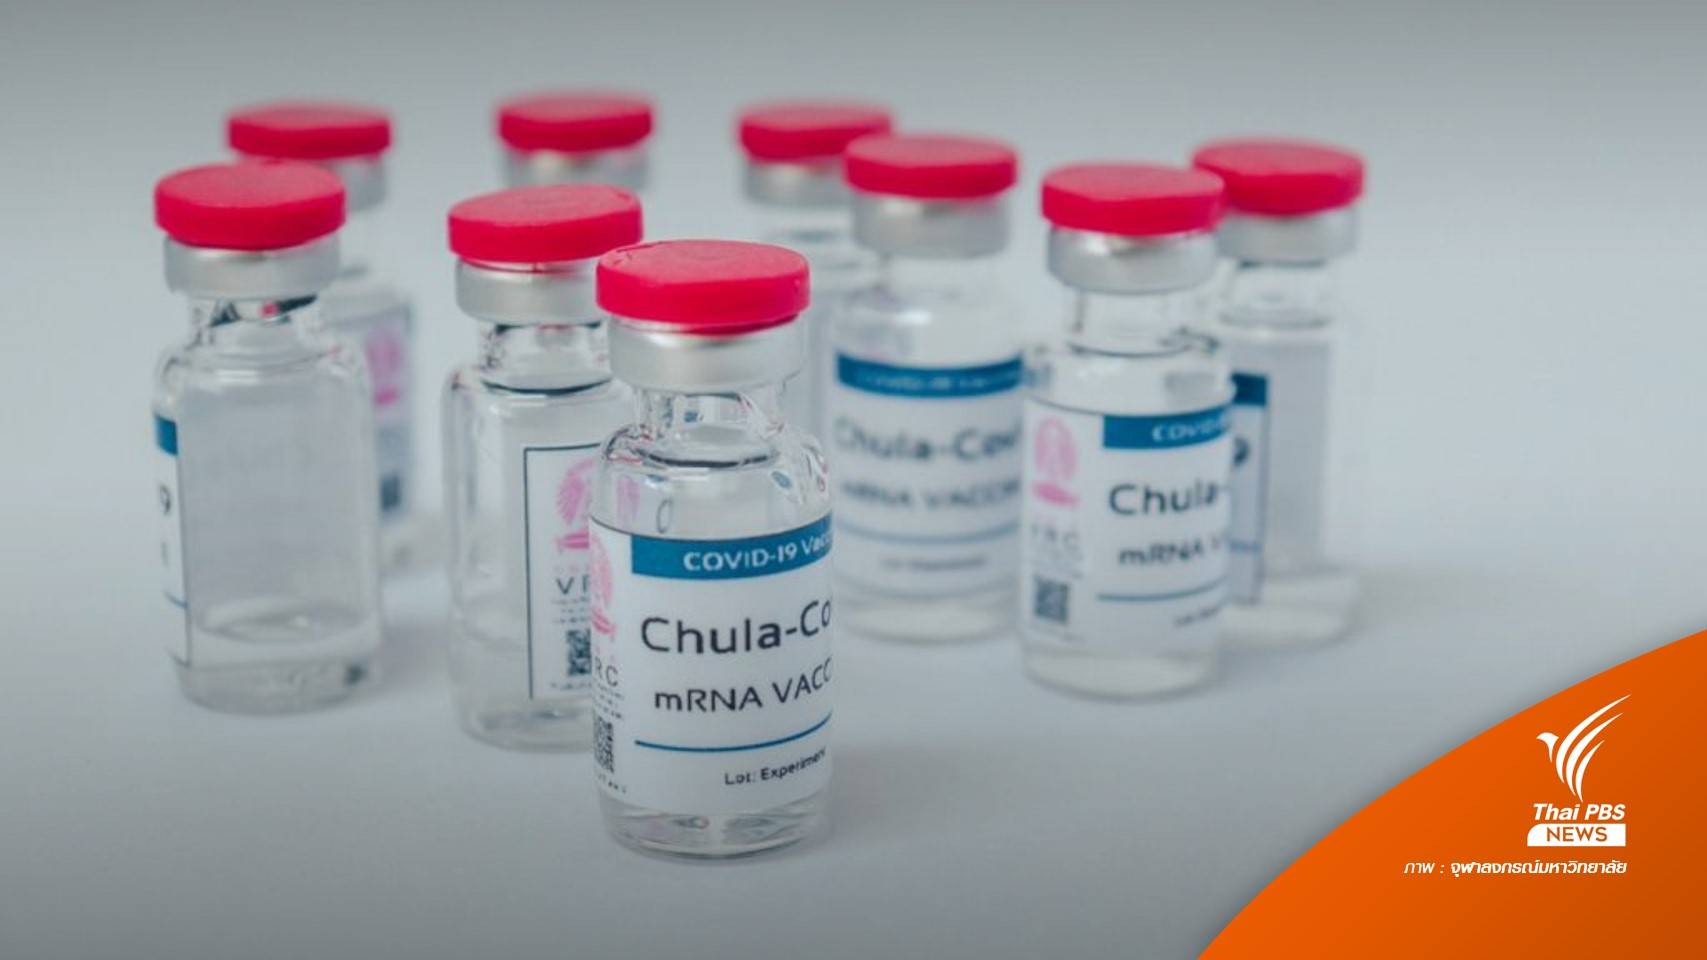 จุฬาฯ แย้มข่าวดีวัคซีน ChulaCov 19 ชนิด mRNA คาดได้ใช้จริงปี 65